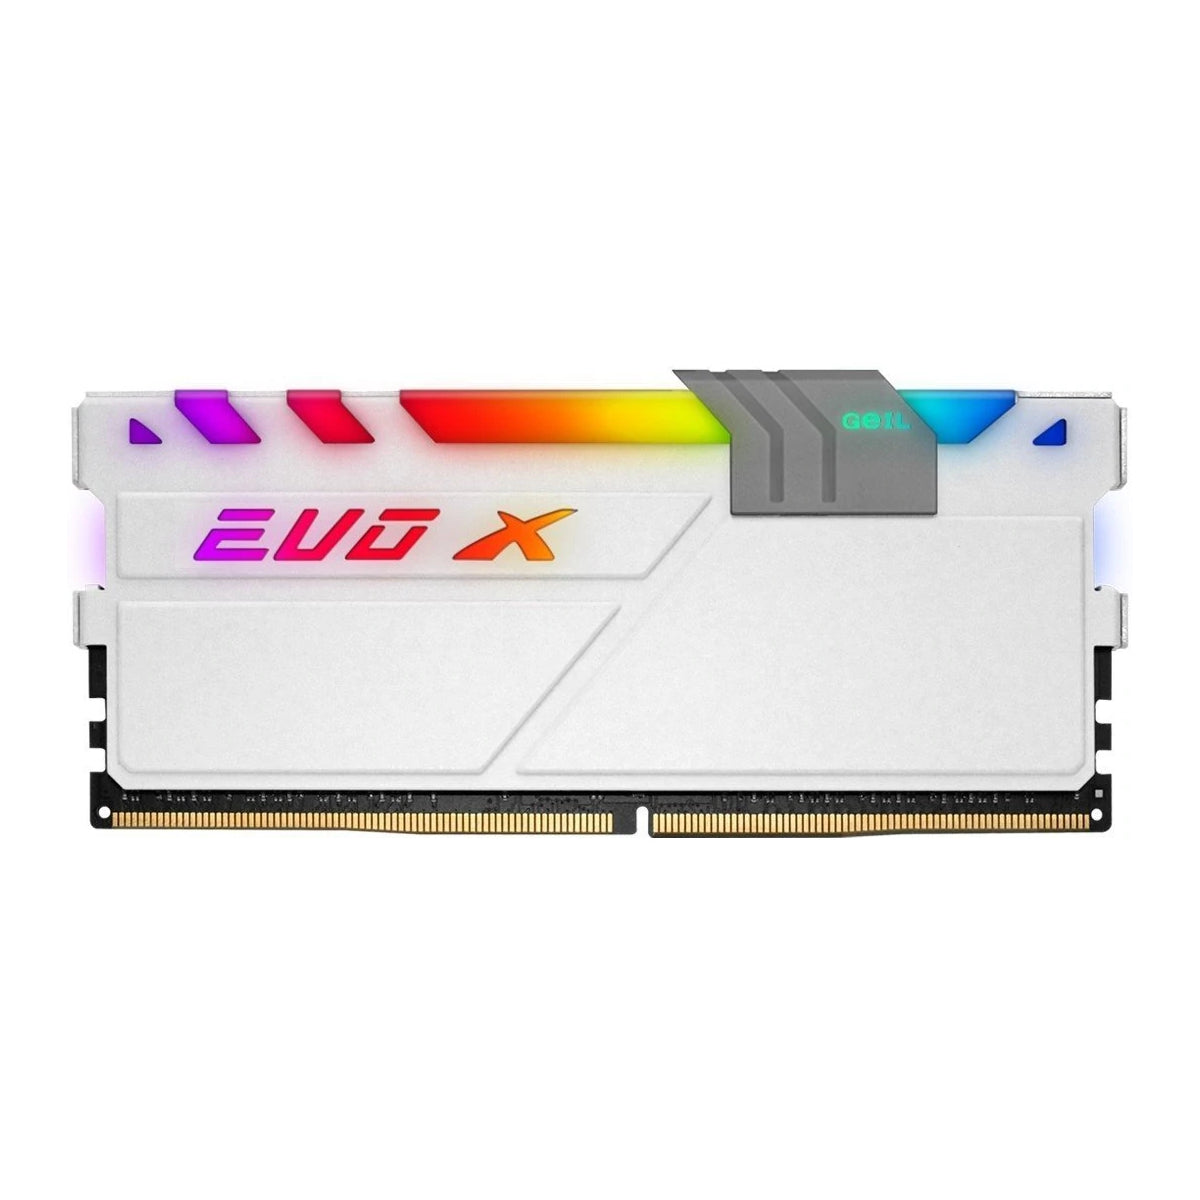 GeIL EVO X II DDR4 8GB 4133Mhz - White - Store 974 | ستور ٩٧٤